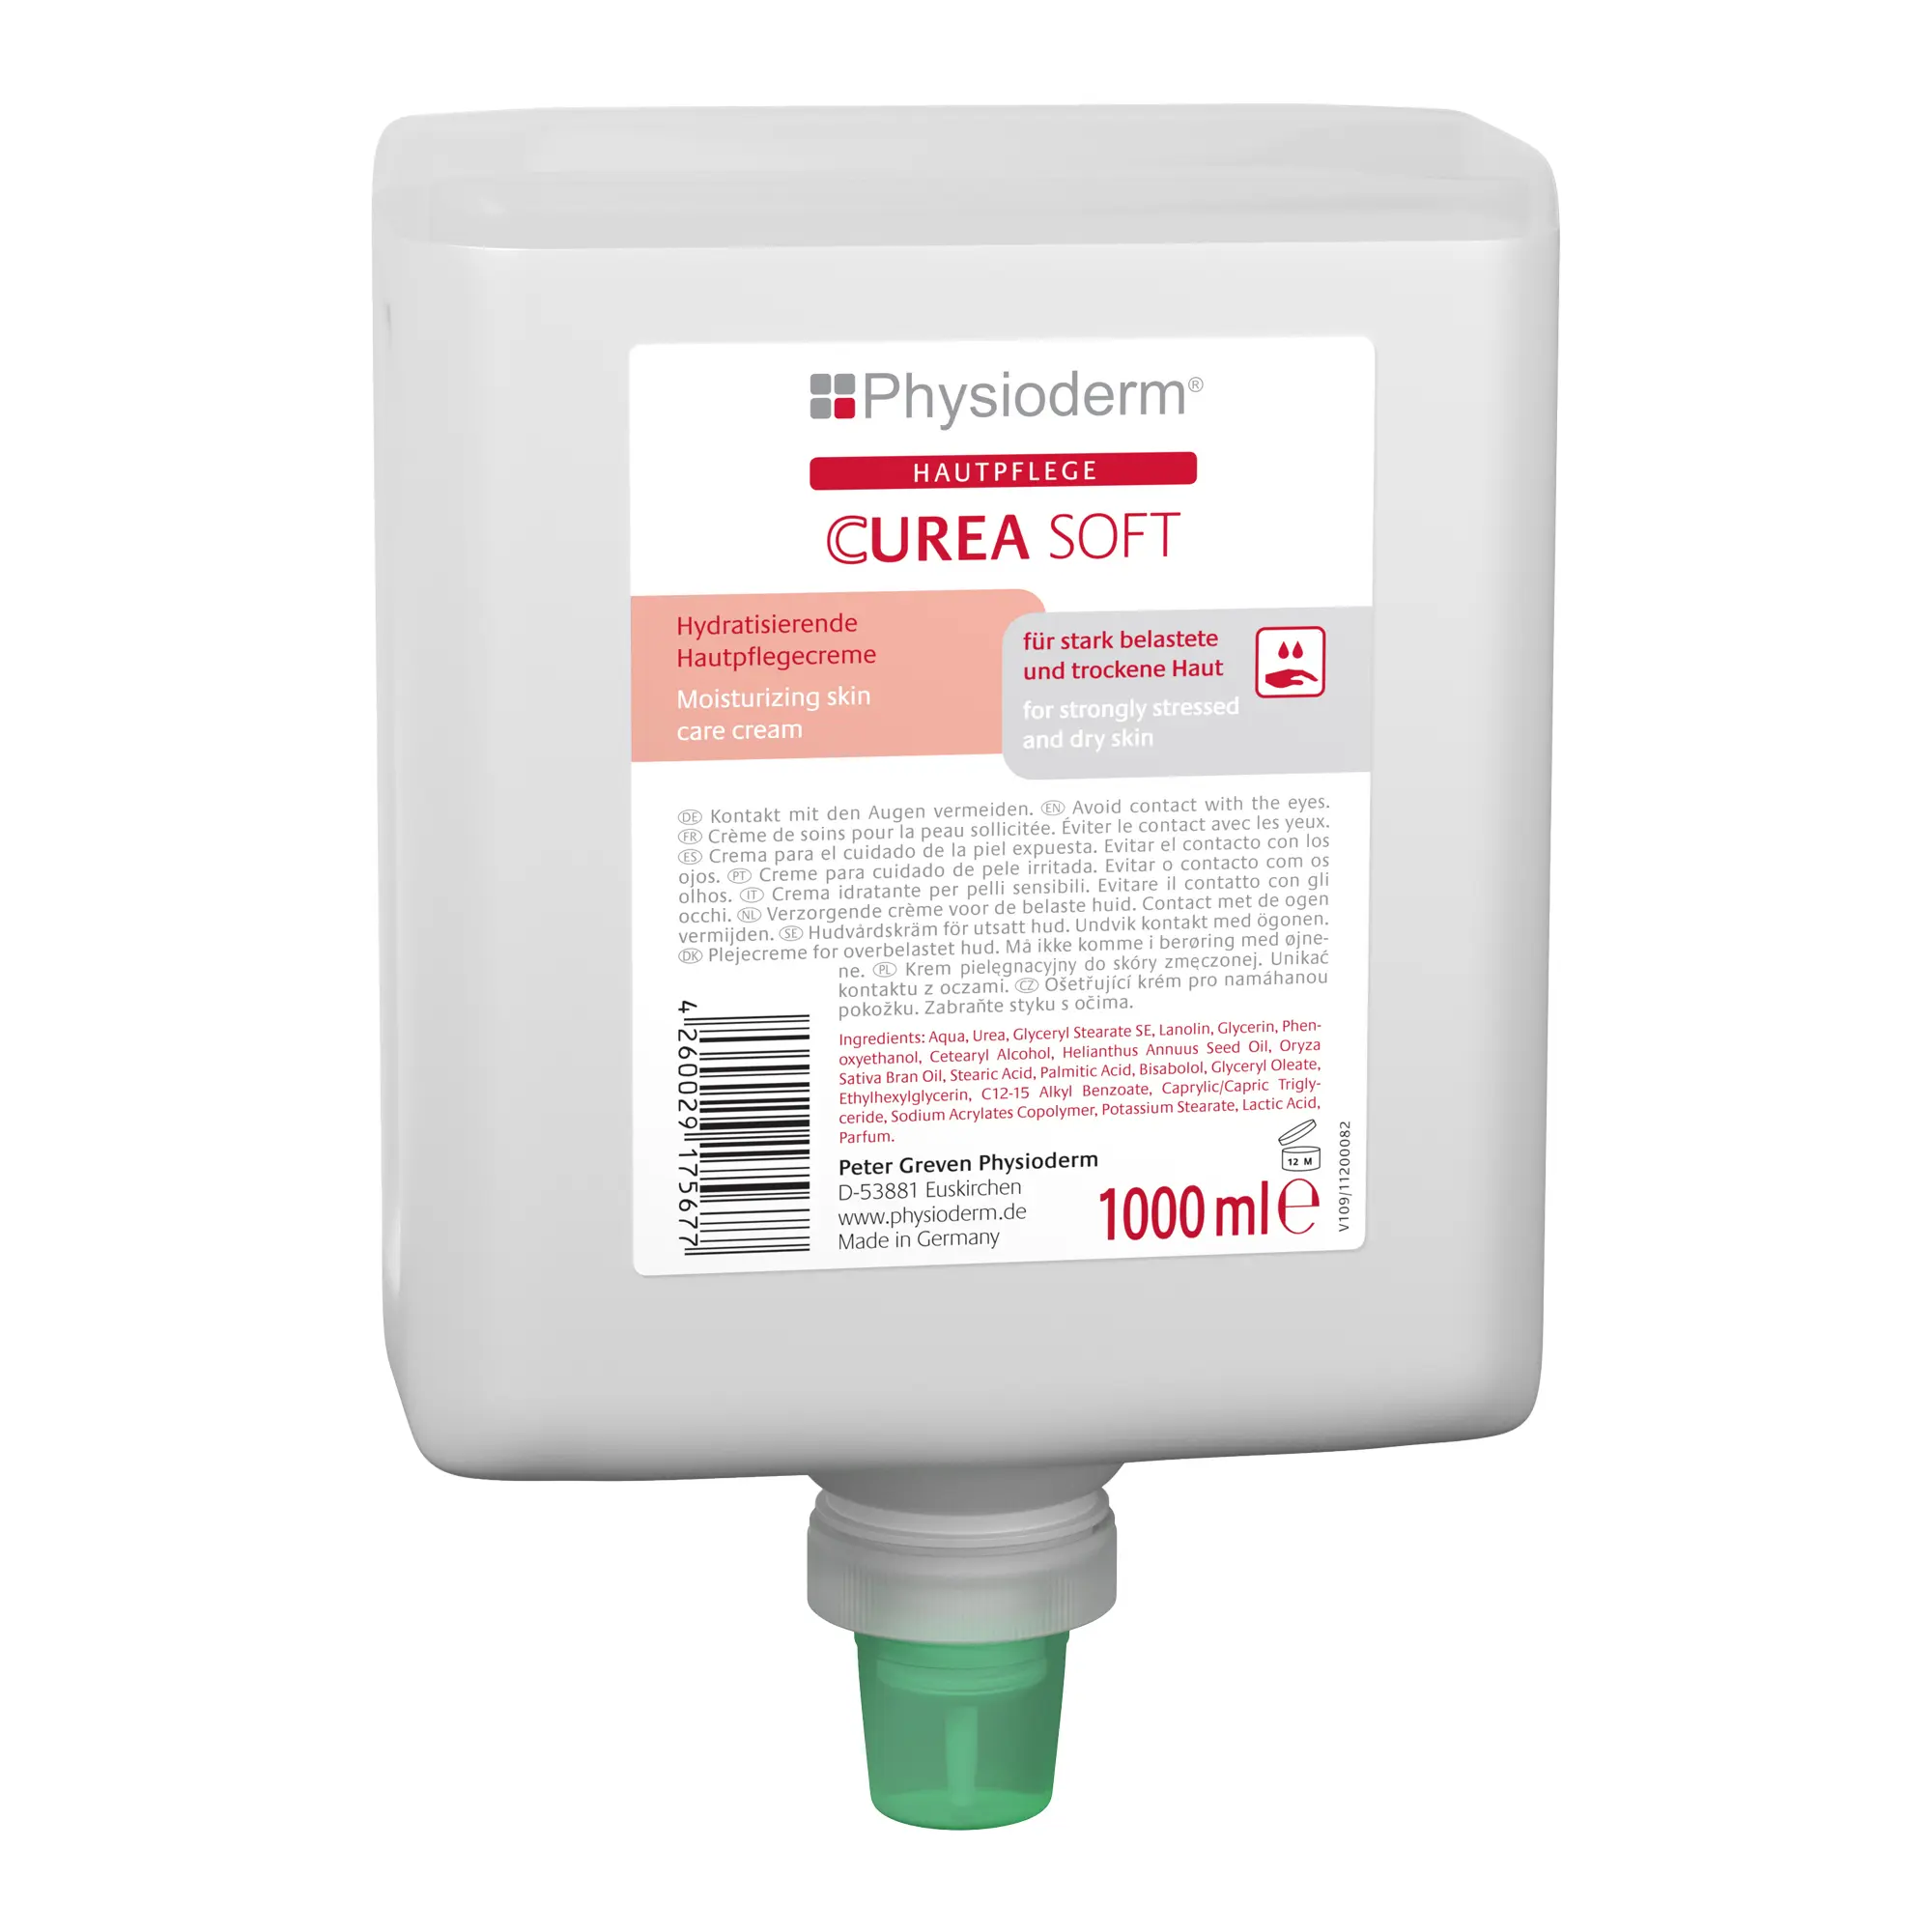 Physioderm Curea Soft Hautpflegecreme 1 Liter Neptune-Flasche 14011004_1